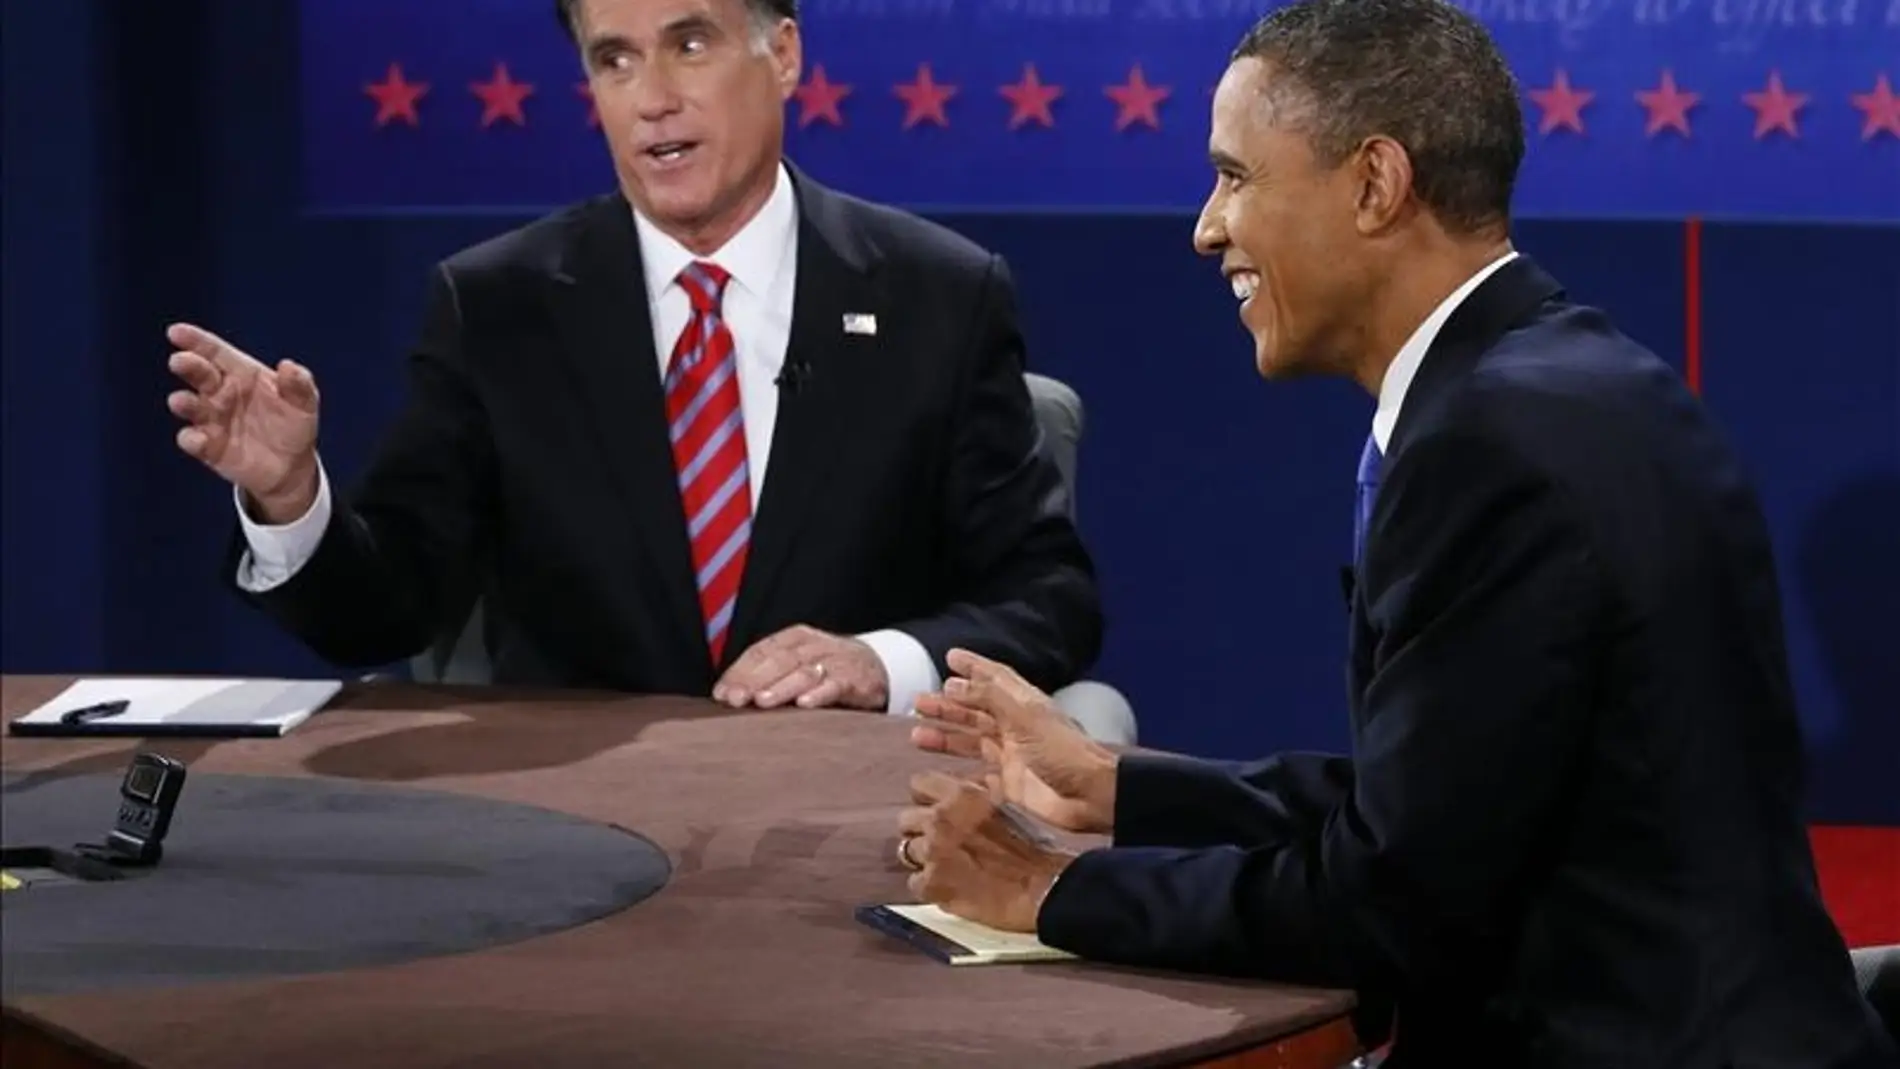 Obama y Romney